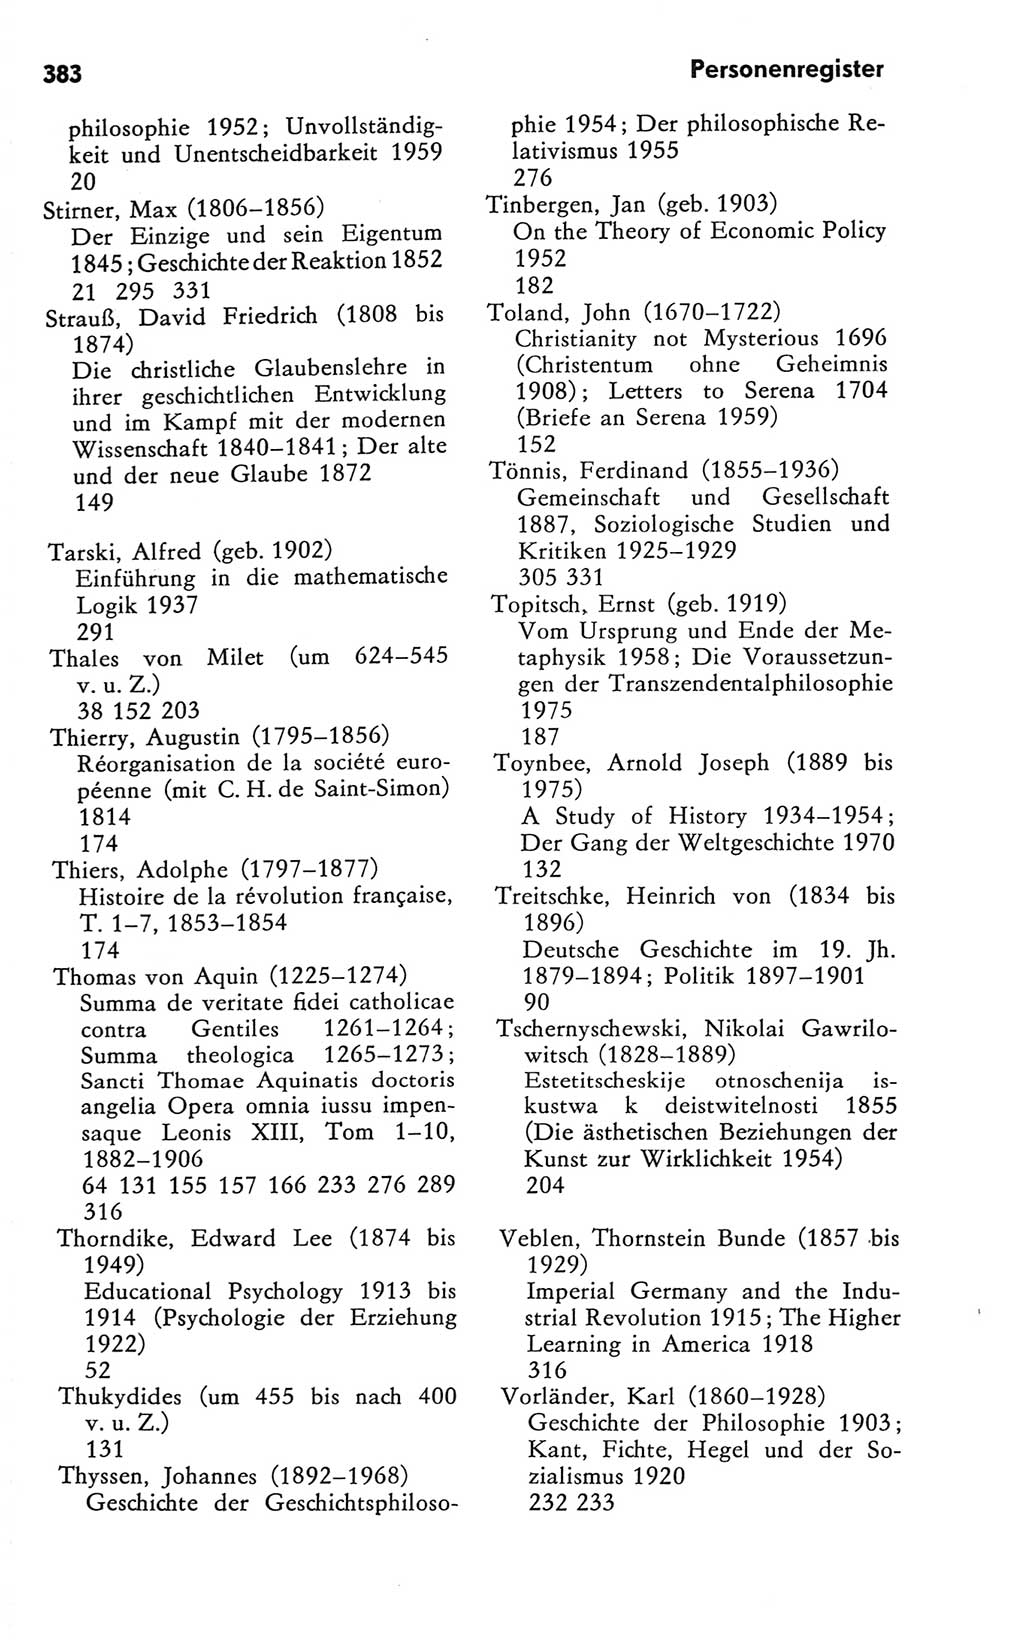 Kleines Wörterbuch der marxistisch-leninistischen Philosophie [Deutsche Demokratische Republik (DDR)] 1981, Seite 383 (Kl. Wb. ML Phil. DDR 1981, S. 383)